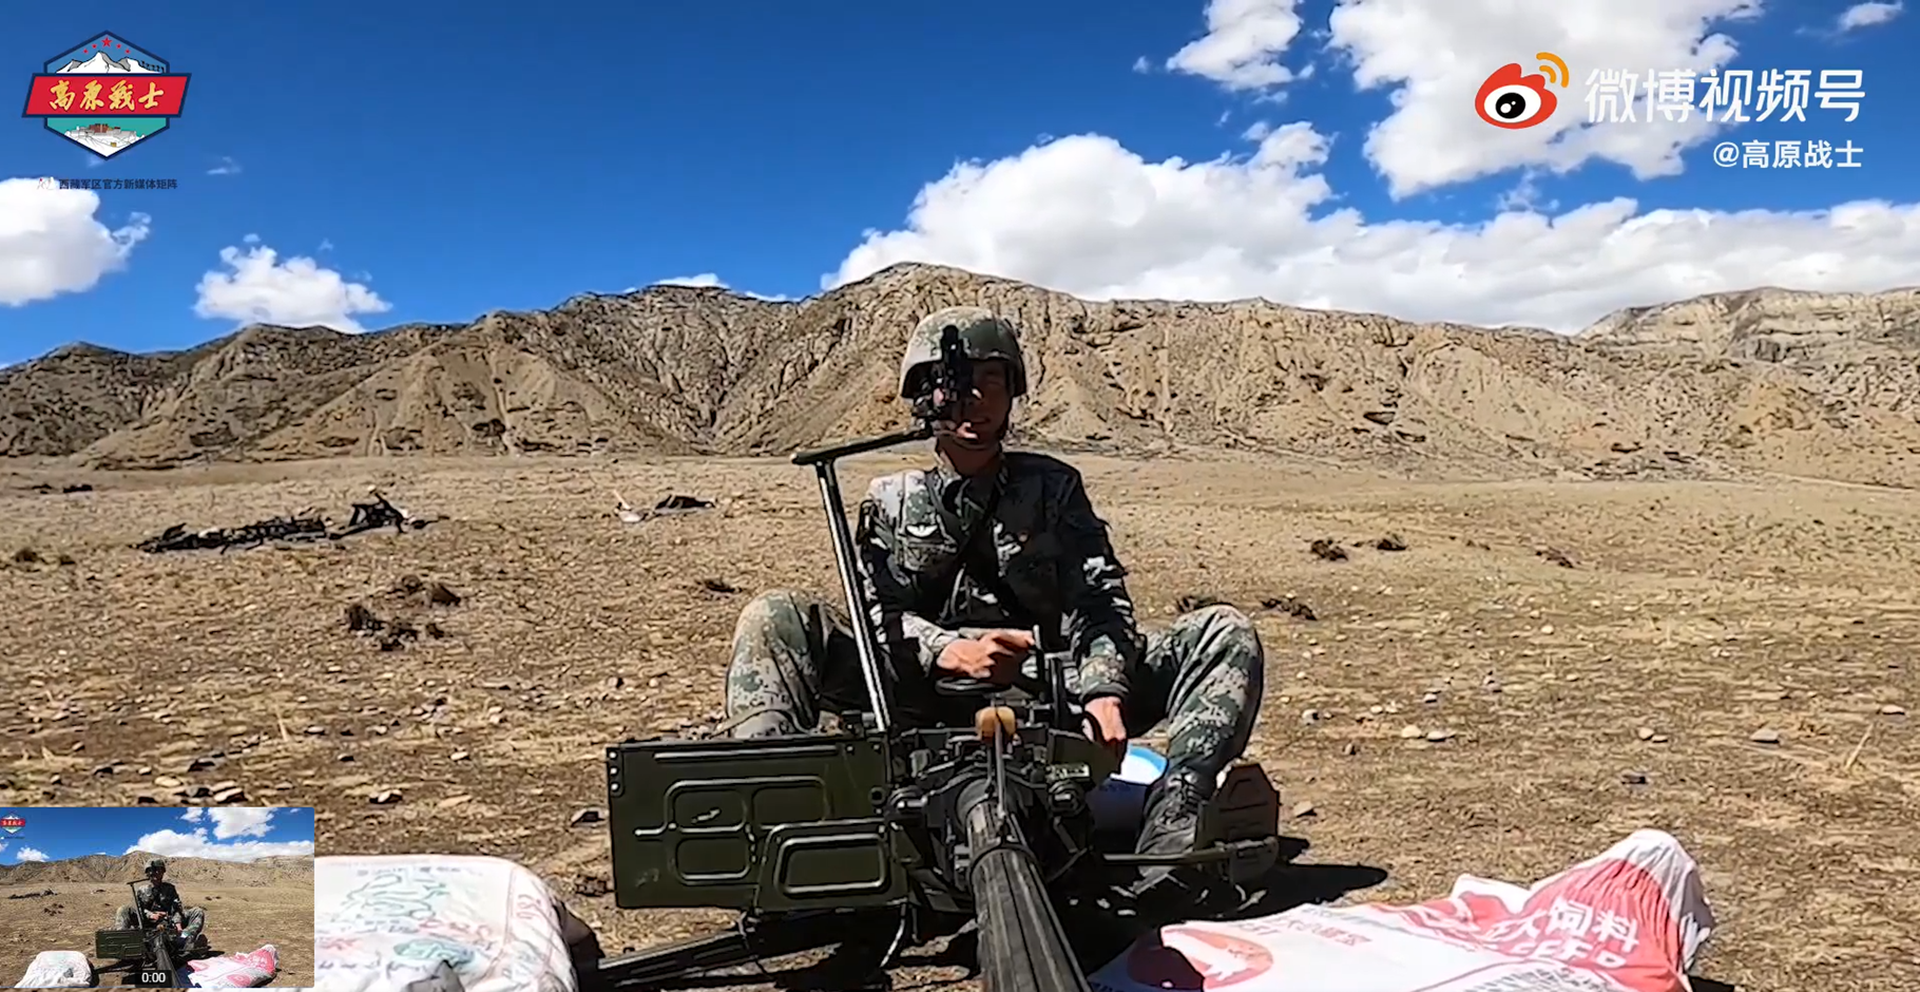 6月15日，西藏军区某部队开展重火力实弹射击训练画面公开。（微博@高原战士）